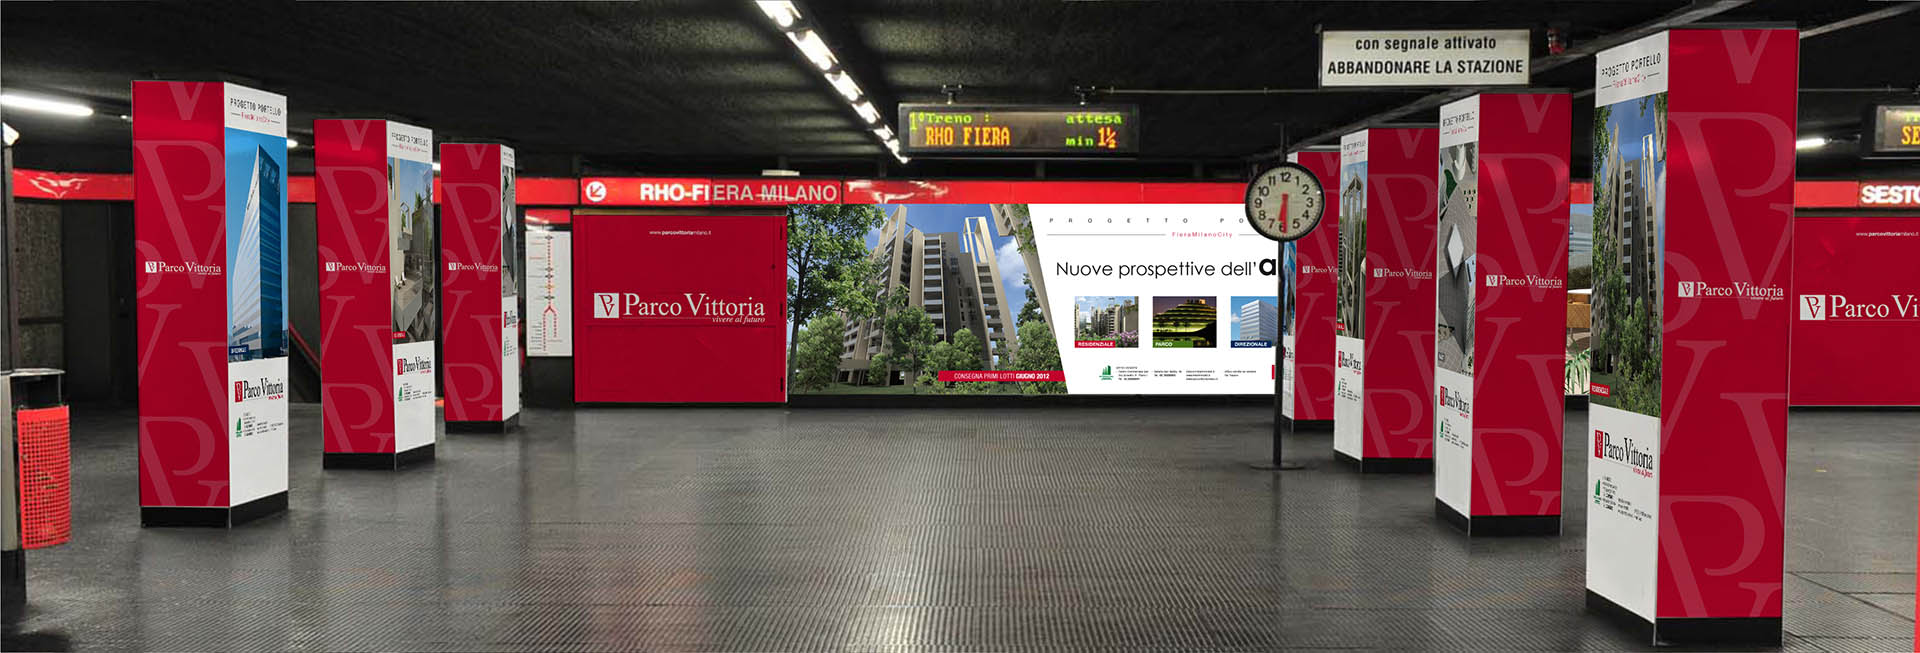 Parco Vittoria, Station domination metro Milano